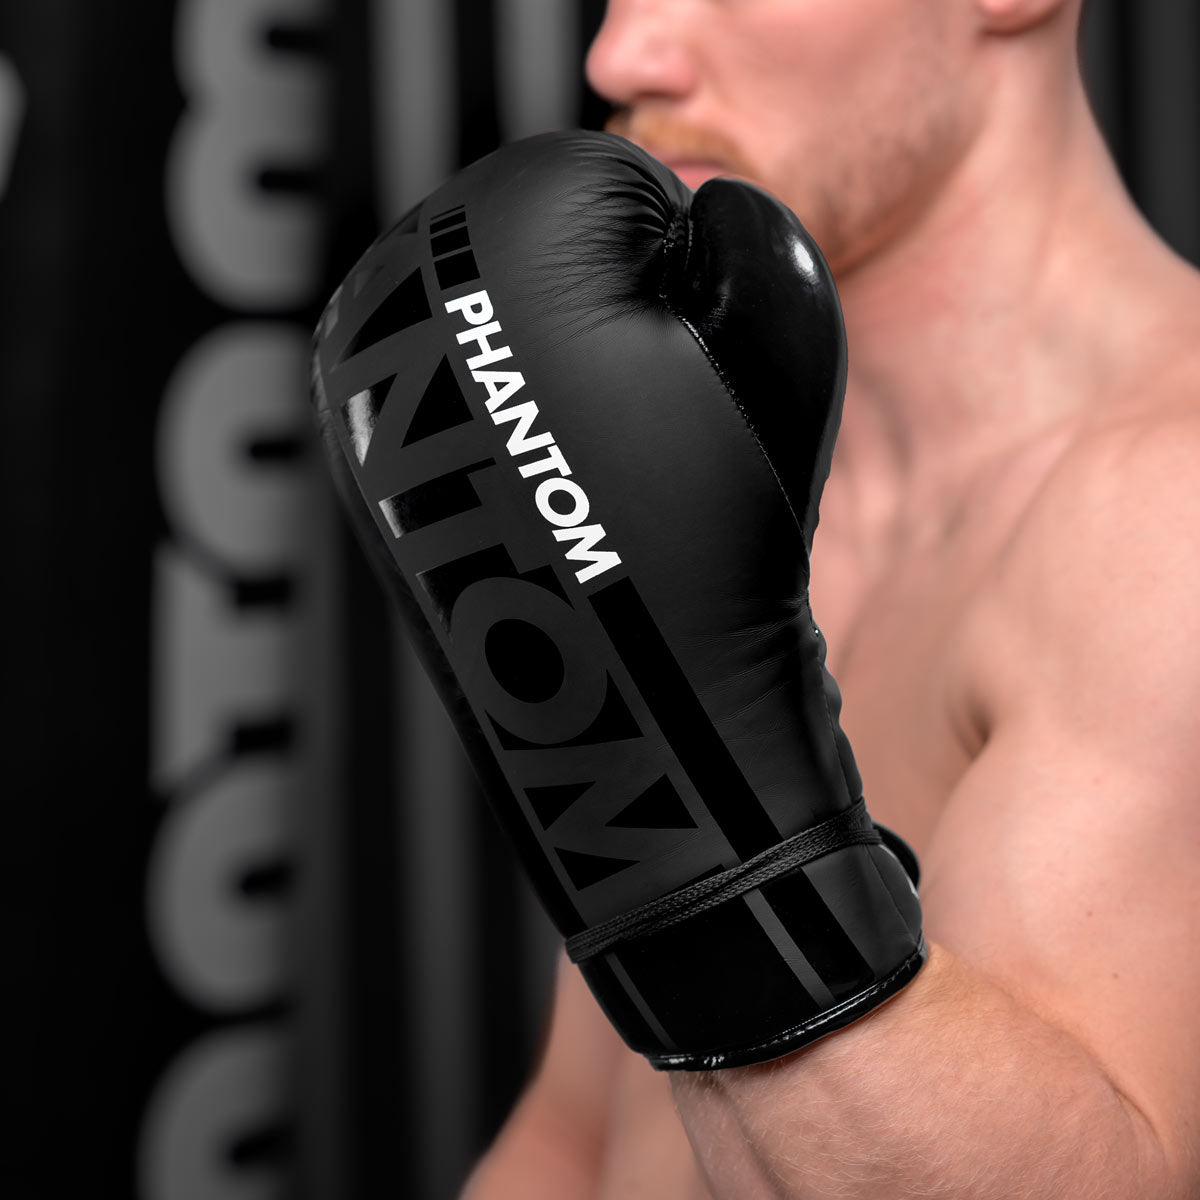 Die Phantom Boxhandschuhe APEX Laced. Mit Schnürung für Profi Training und Wettkampf.  Ideal für Muay Thai, Kickboxen, Boxen und MMA Standup.